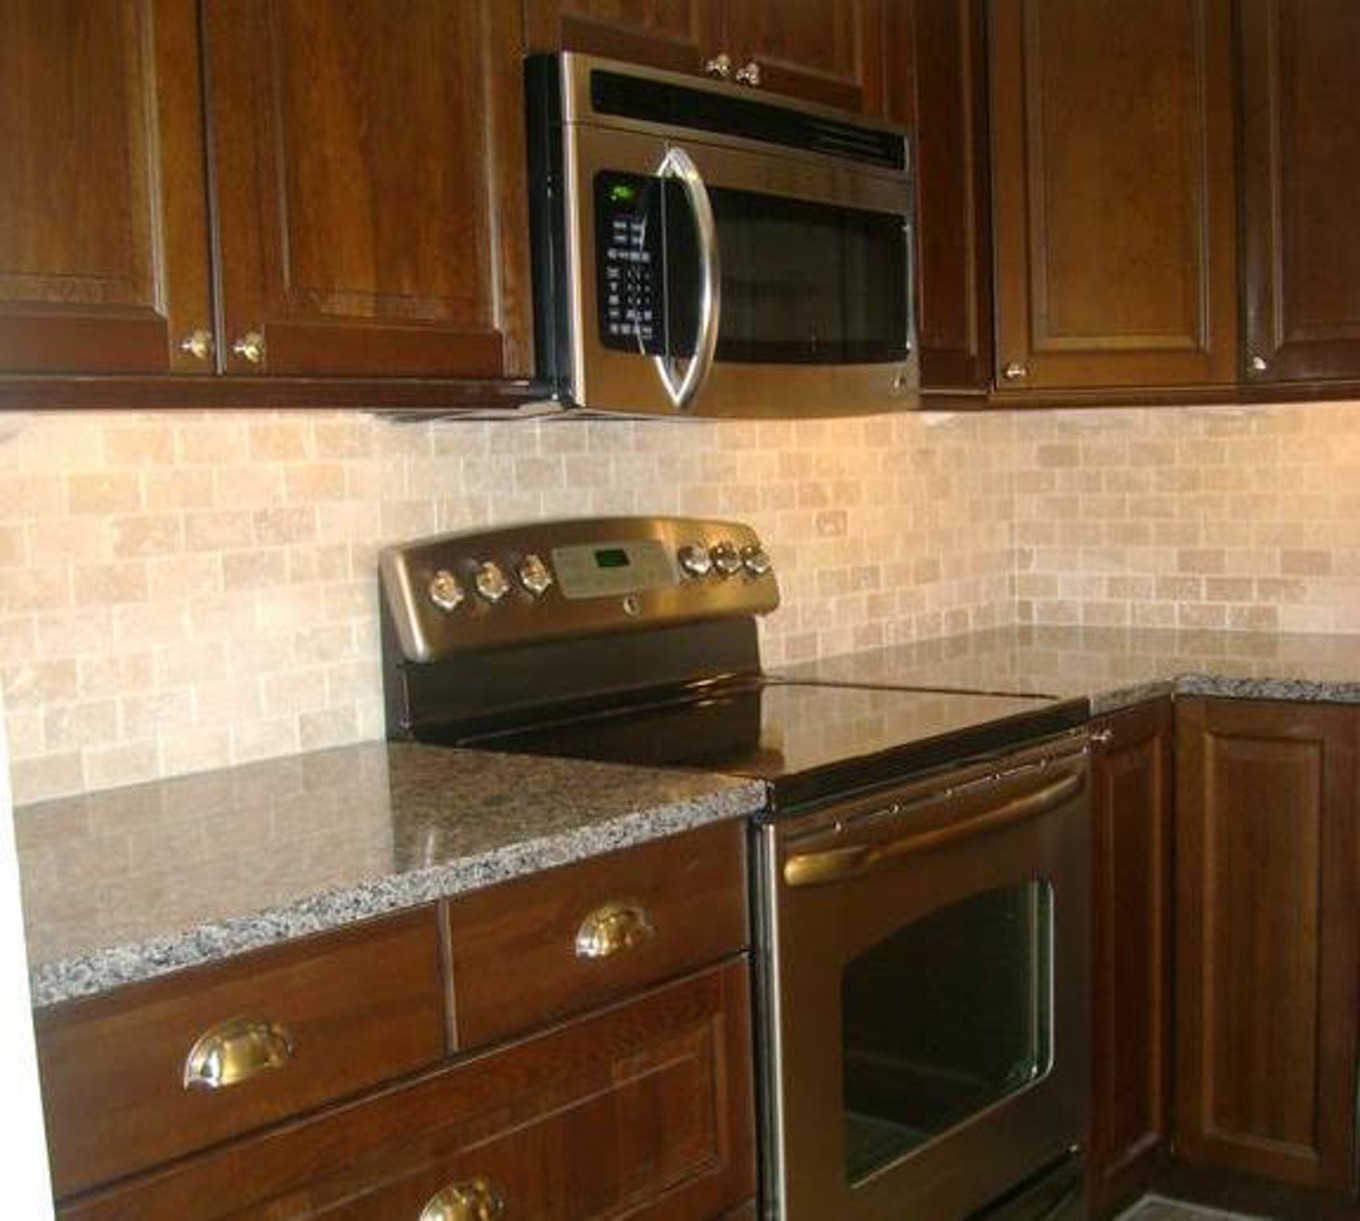 Kitchen Backsplash Installation Cost
 Kitchen Home Depot Backsplash Tile With Simple Design And